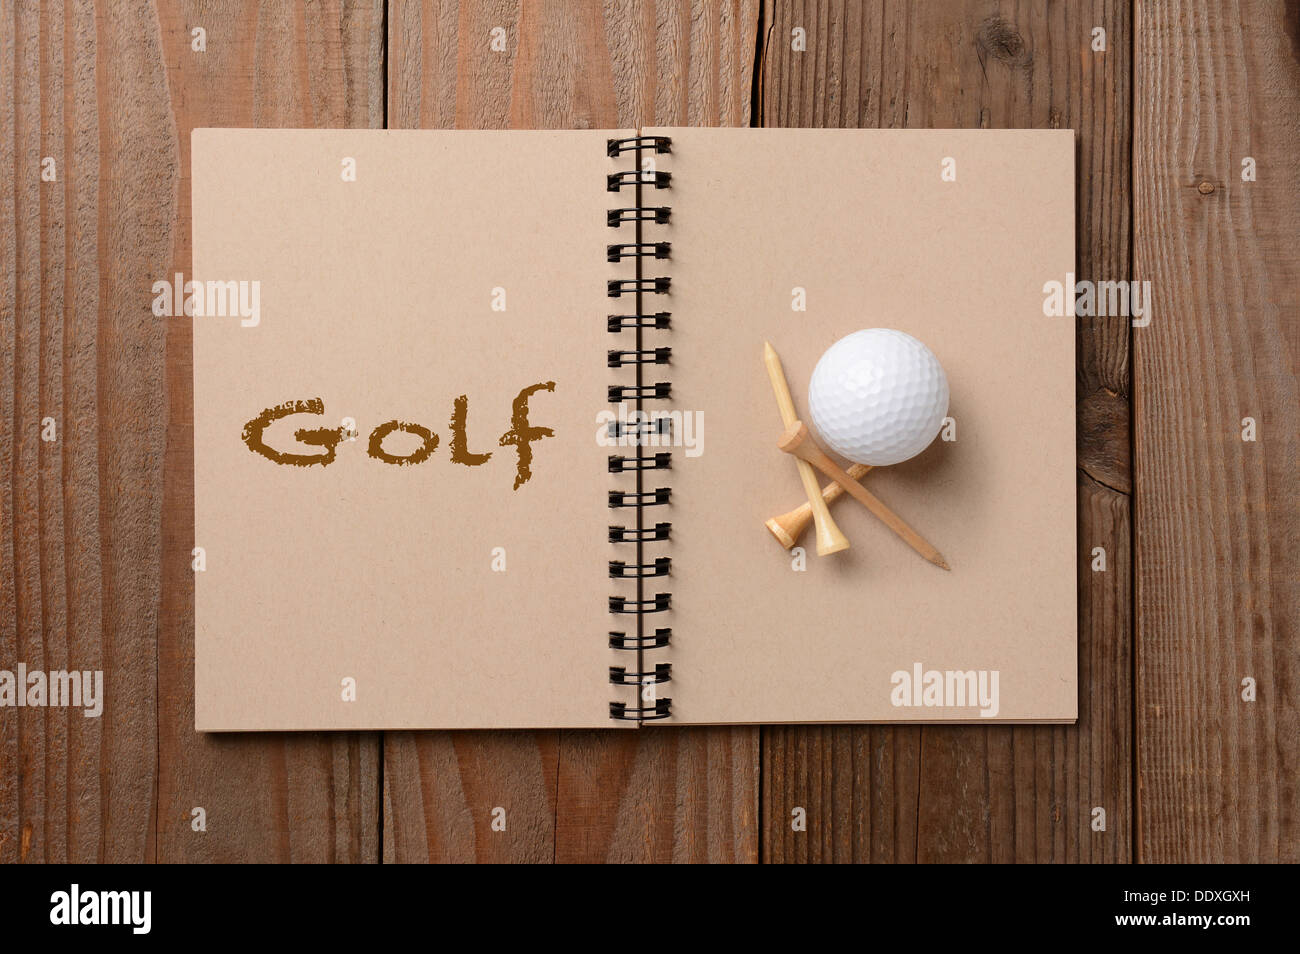 Una pallina da golf e tees sulla pagina vuota di un notebook. La pagina di fronte ha la parola Golf enunciato. Foto Stock